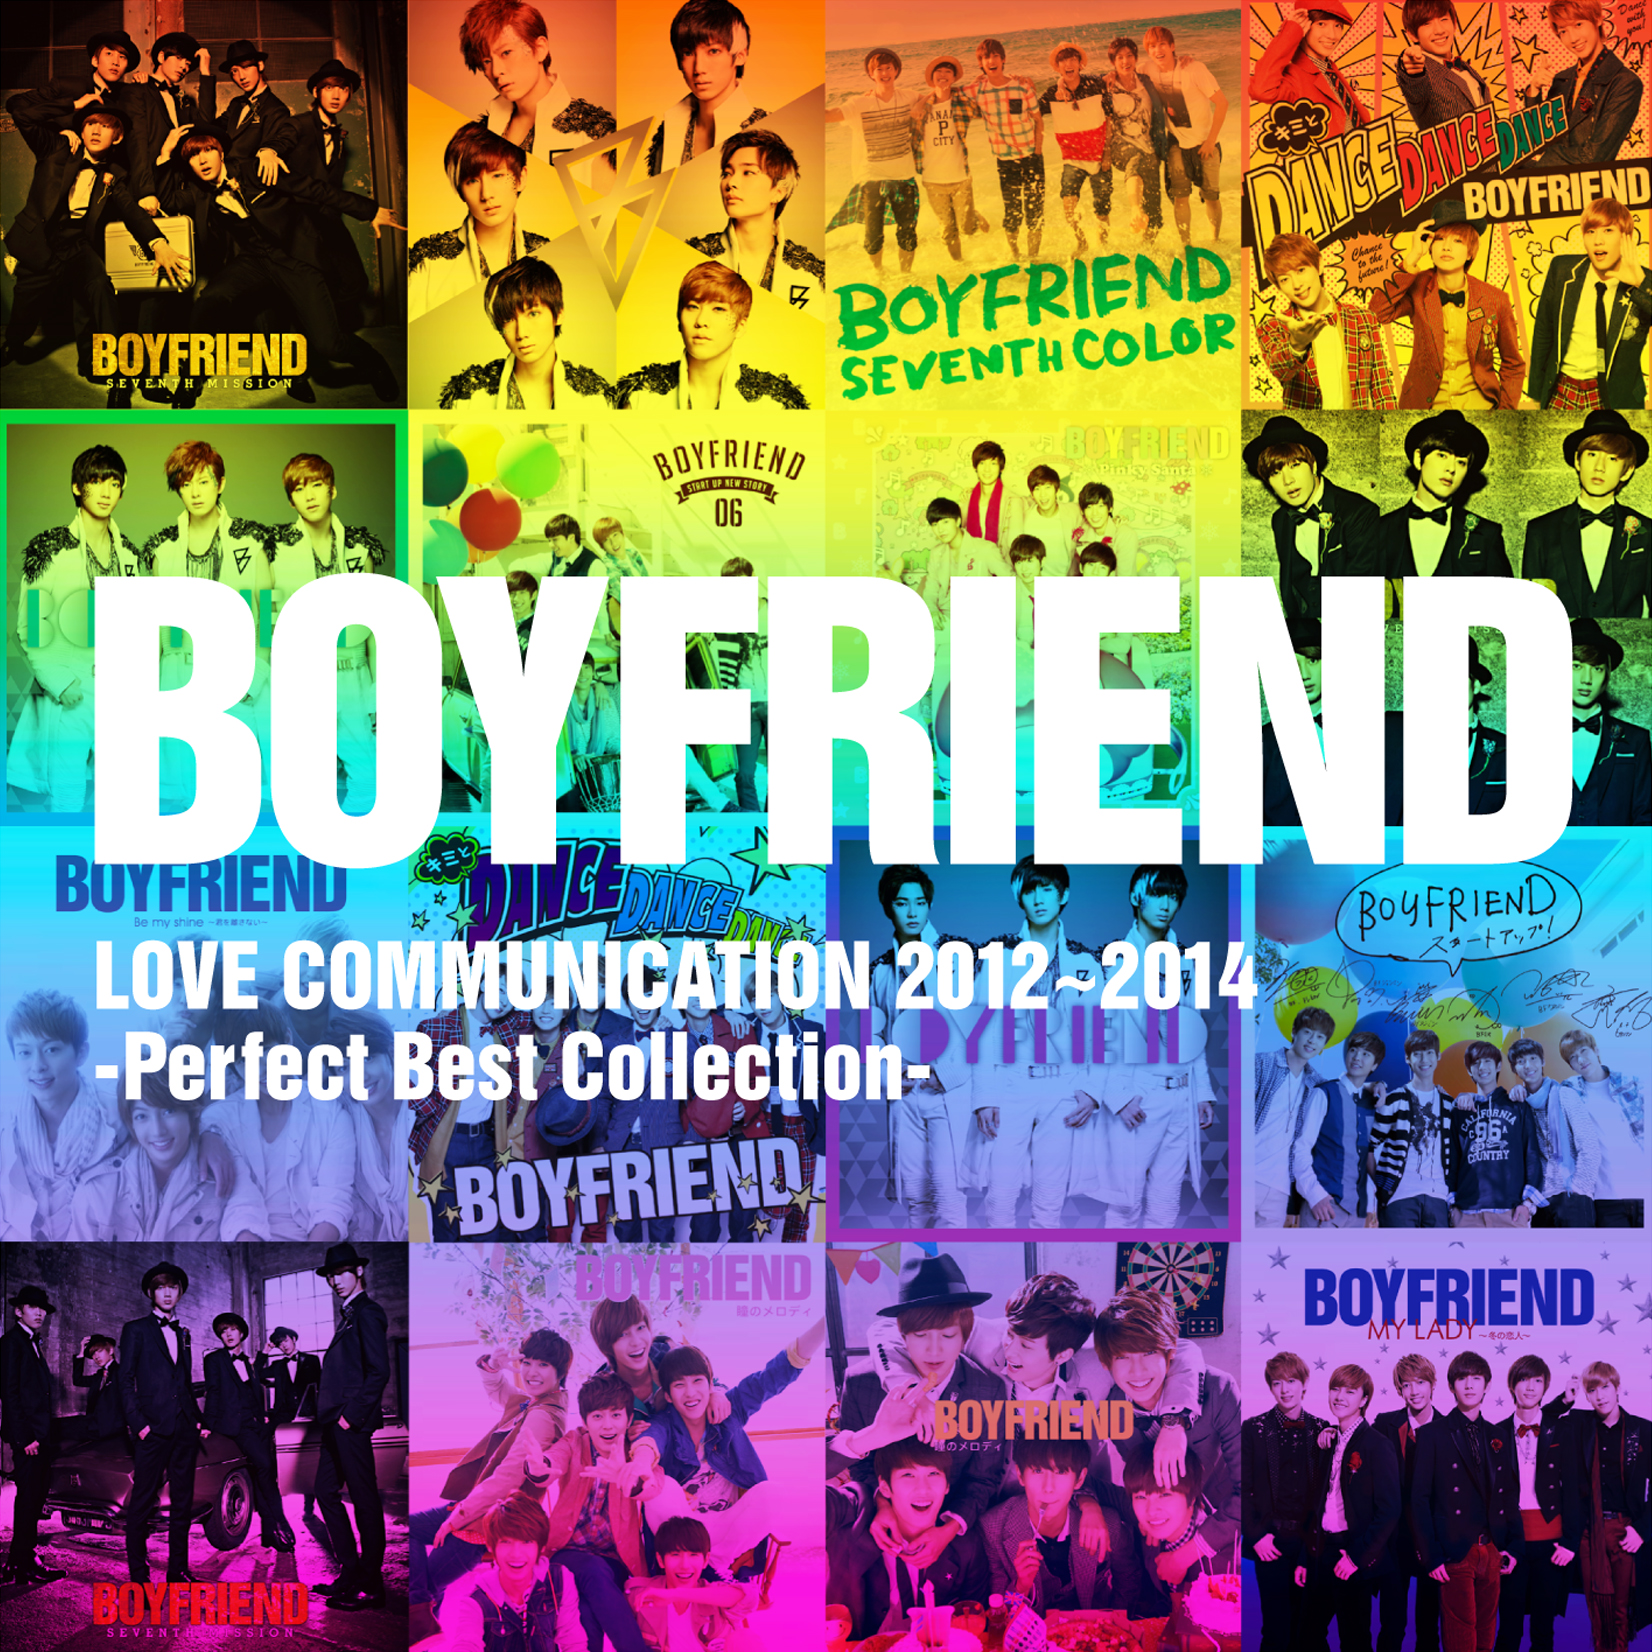 Best collection 2. Boyfriend boyfriend album. CD with boyfriend.